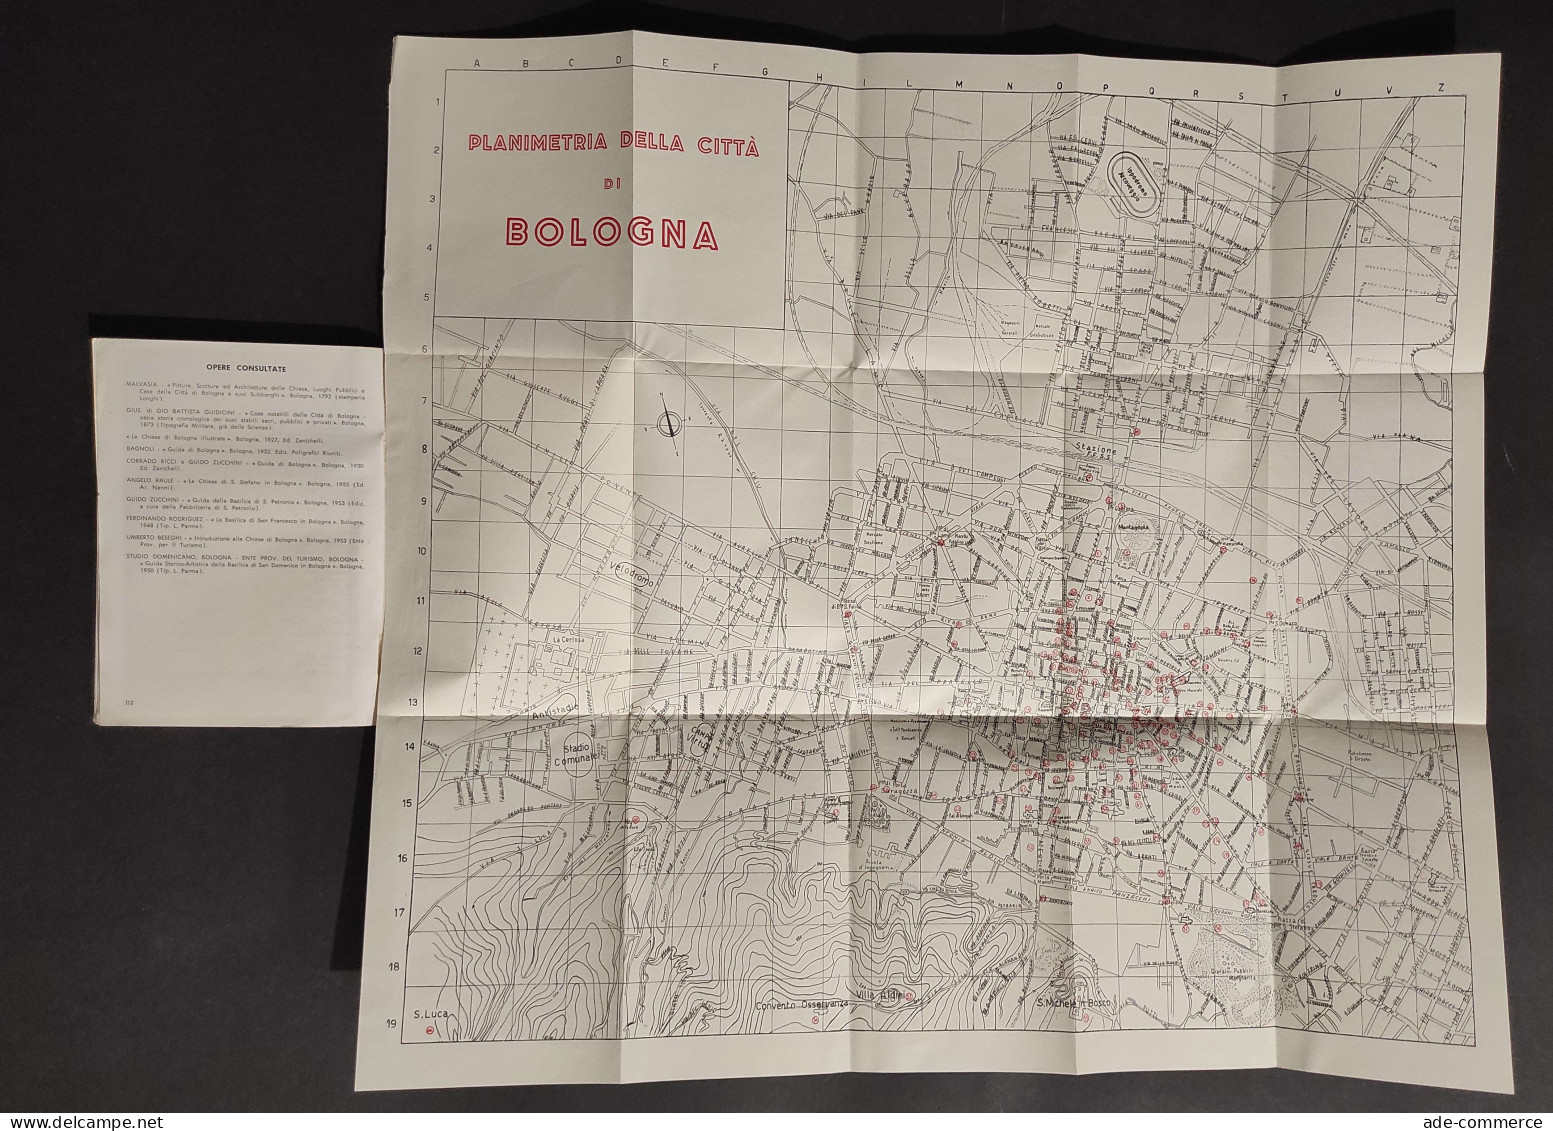 Bologna Guida Turistica Illustrata - G.C. Mazzoni E R. Vignoli - 1956 - Turismo, Viaggi